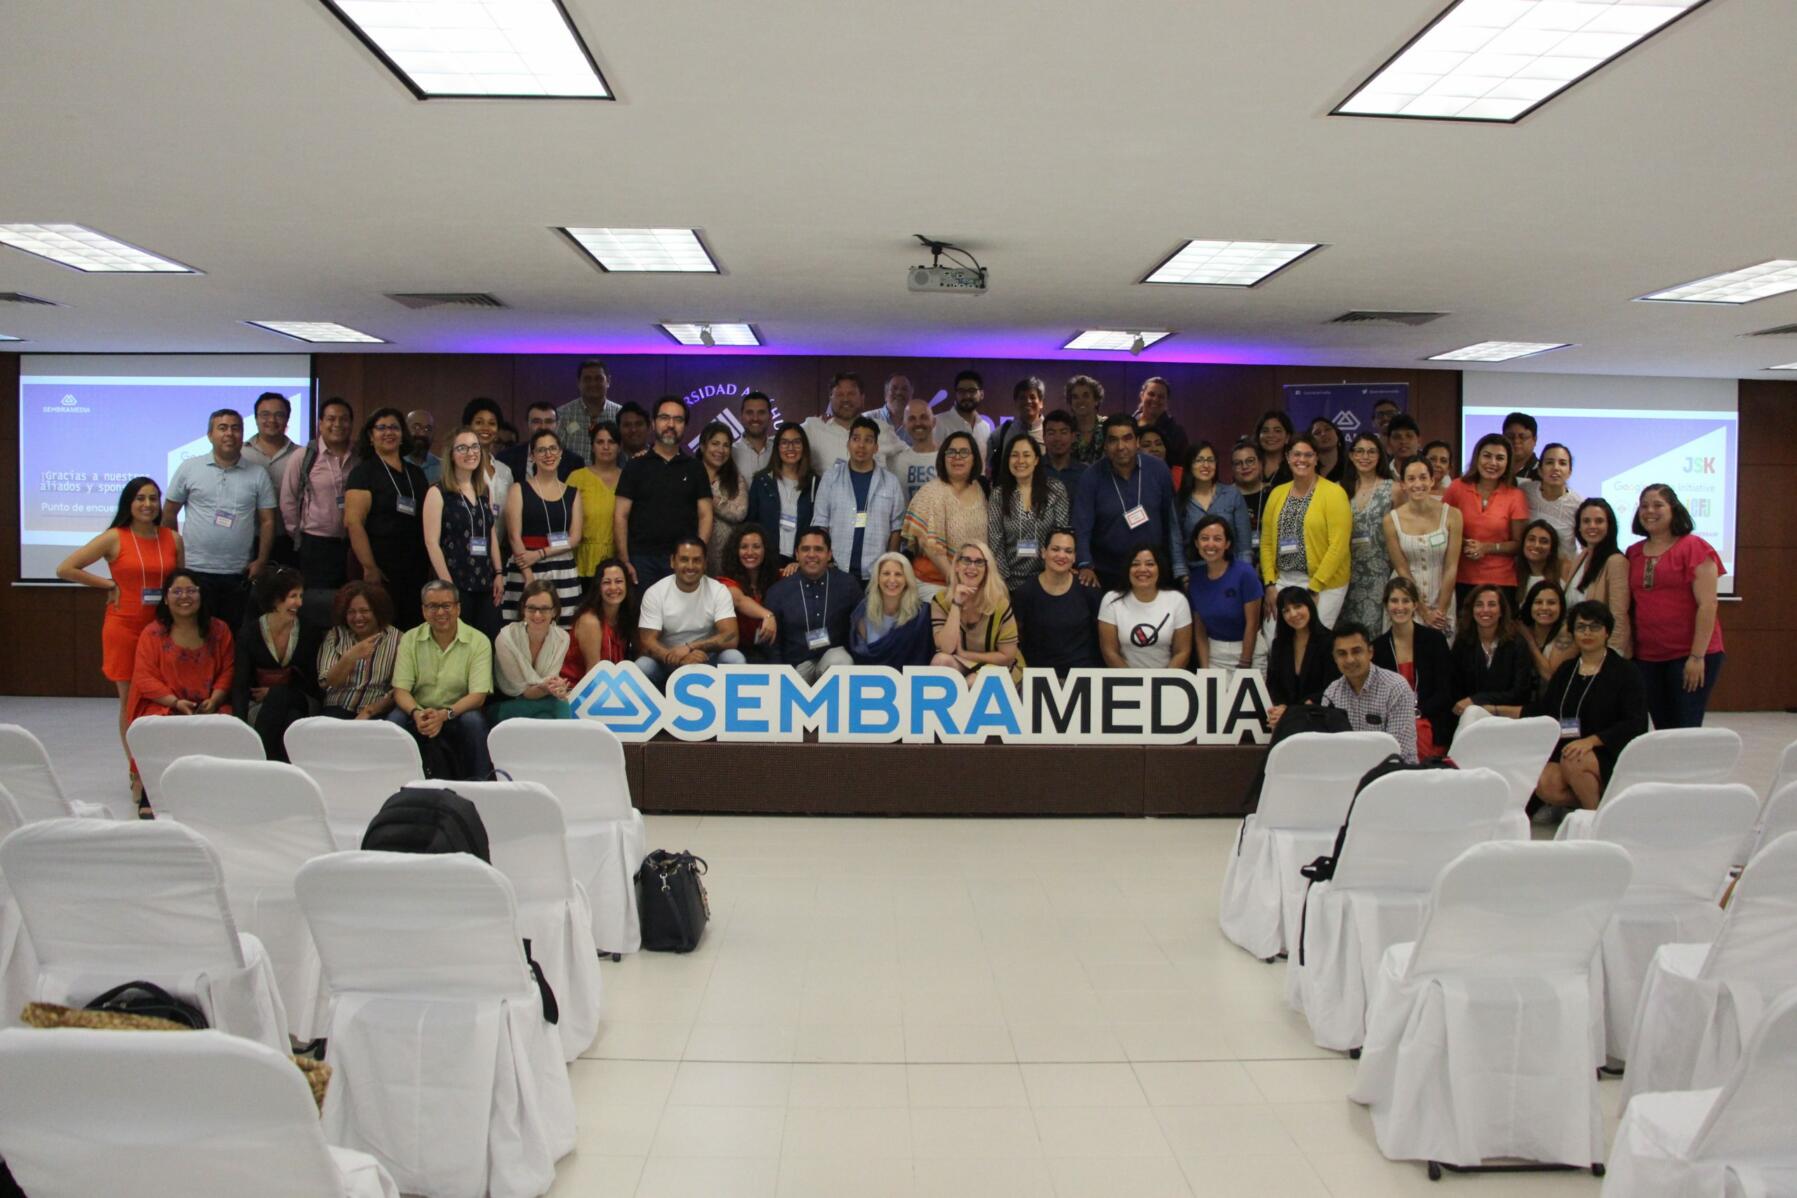 Participantes en el "Punto de encuentro", evento organizado por Sembramedia (Foto cortesía de Sembramedia)